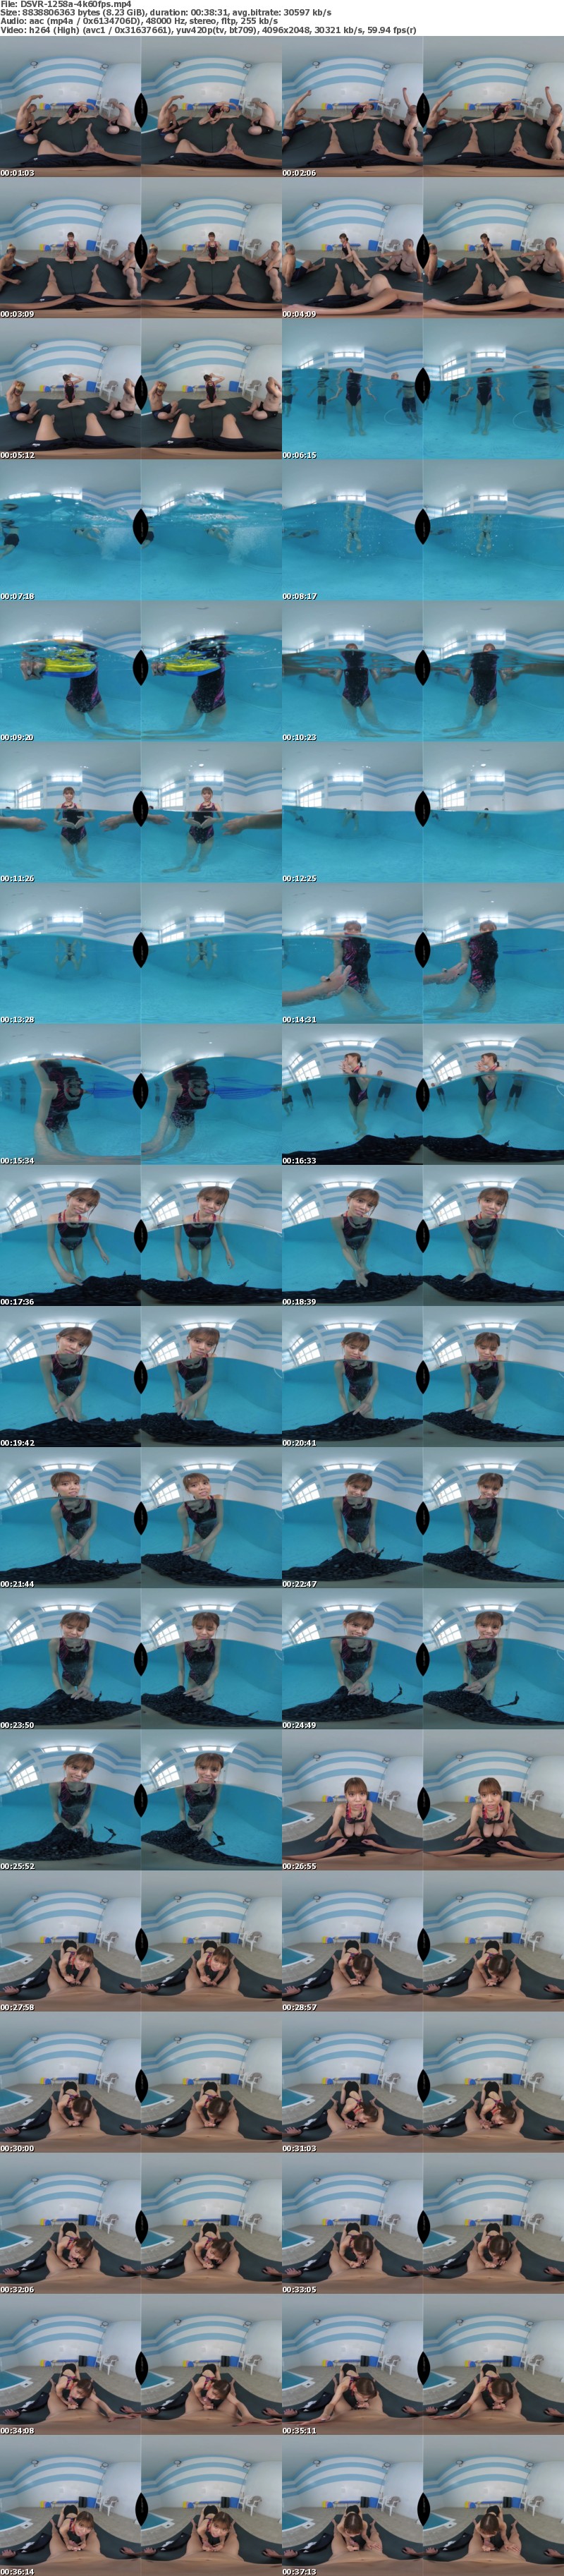 [VR] 3DSVR-1258 【VR】水泳の練習中に水着姿に興奮して勃起してしまった僕…必死に隠すが見つかってしまい、 練習そっちのけで興奮して僕のザーメン尽きるまで中出しを求める、水泳教室のインストラクター‘新海咲’